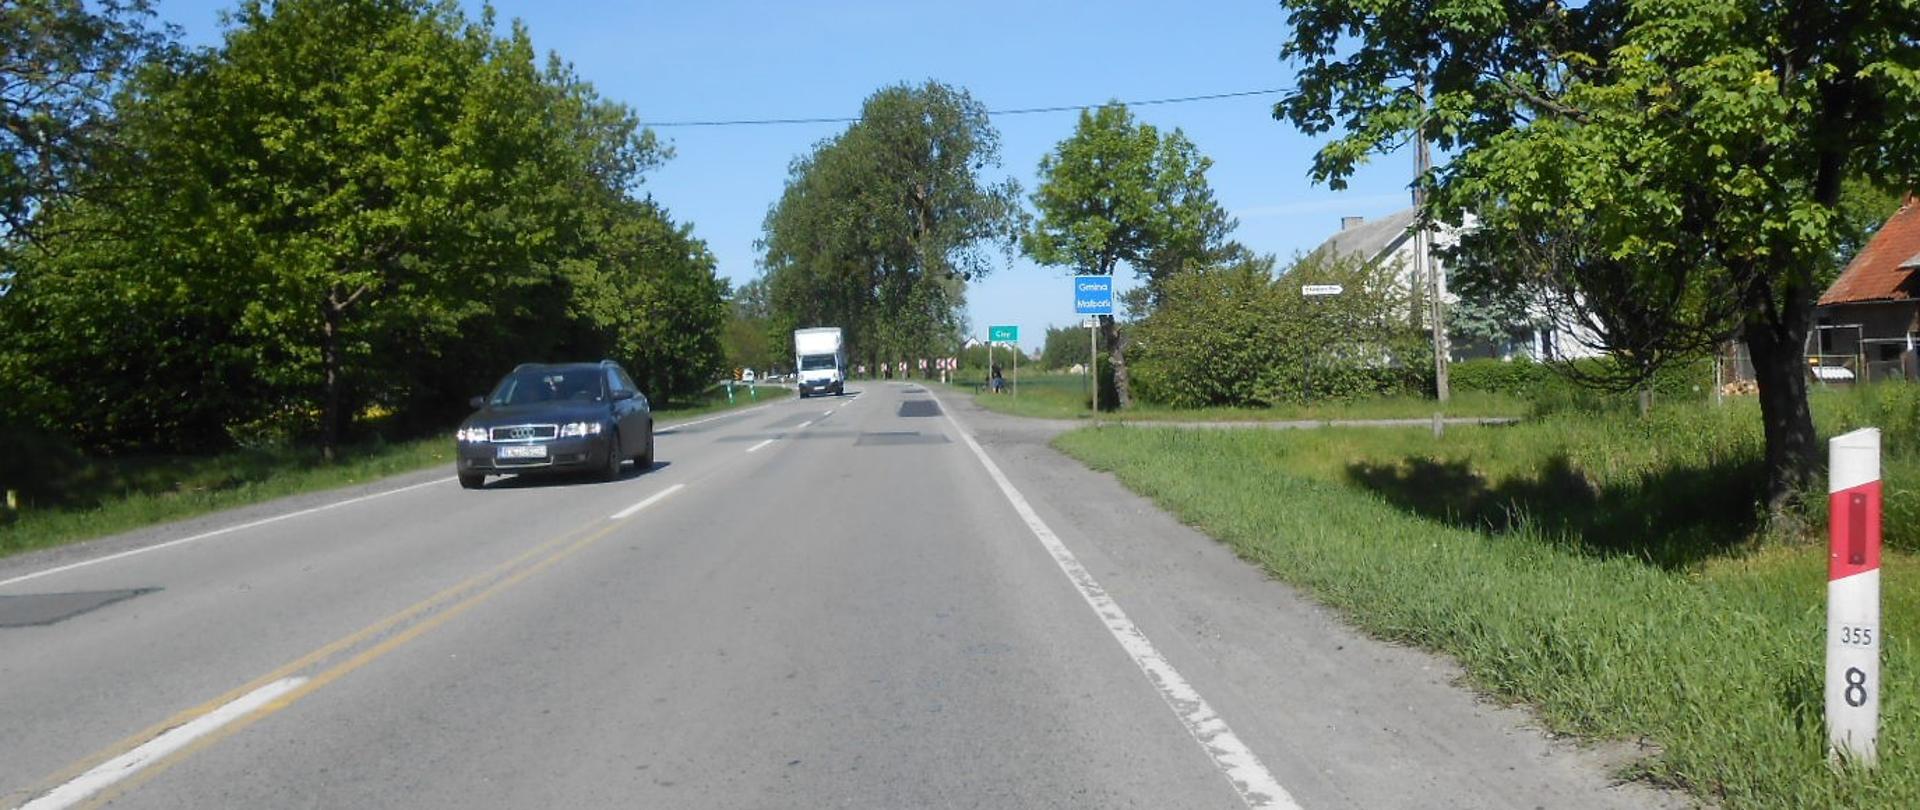 Zdjęcie przedstawia stan obecny drogi krajowej nr 22 w Cisach w kierunku Malborka